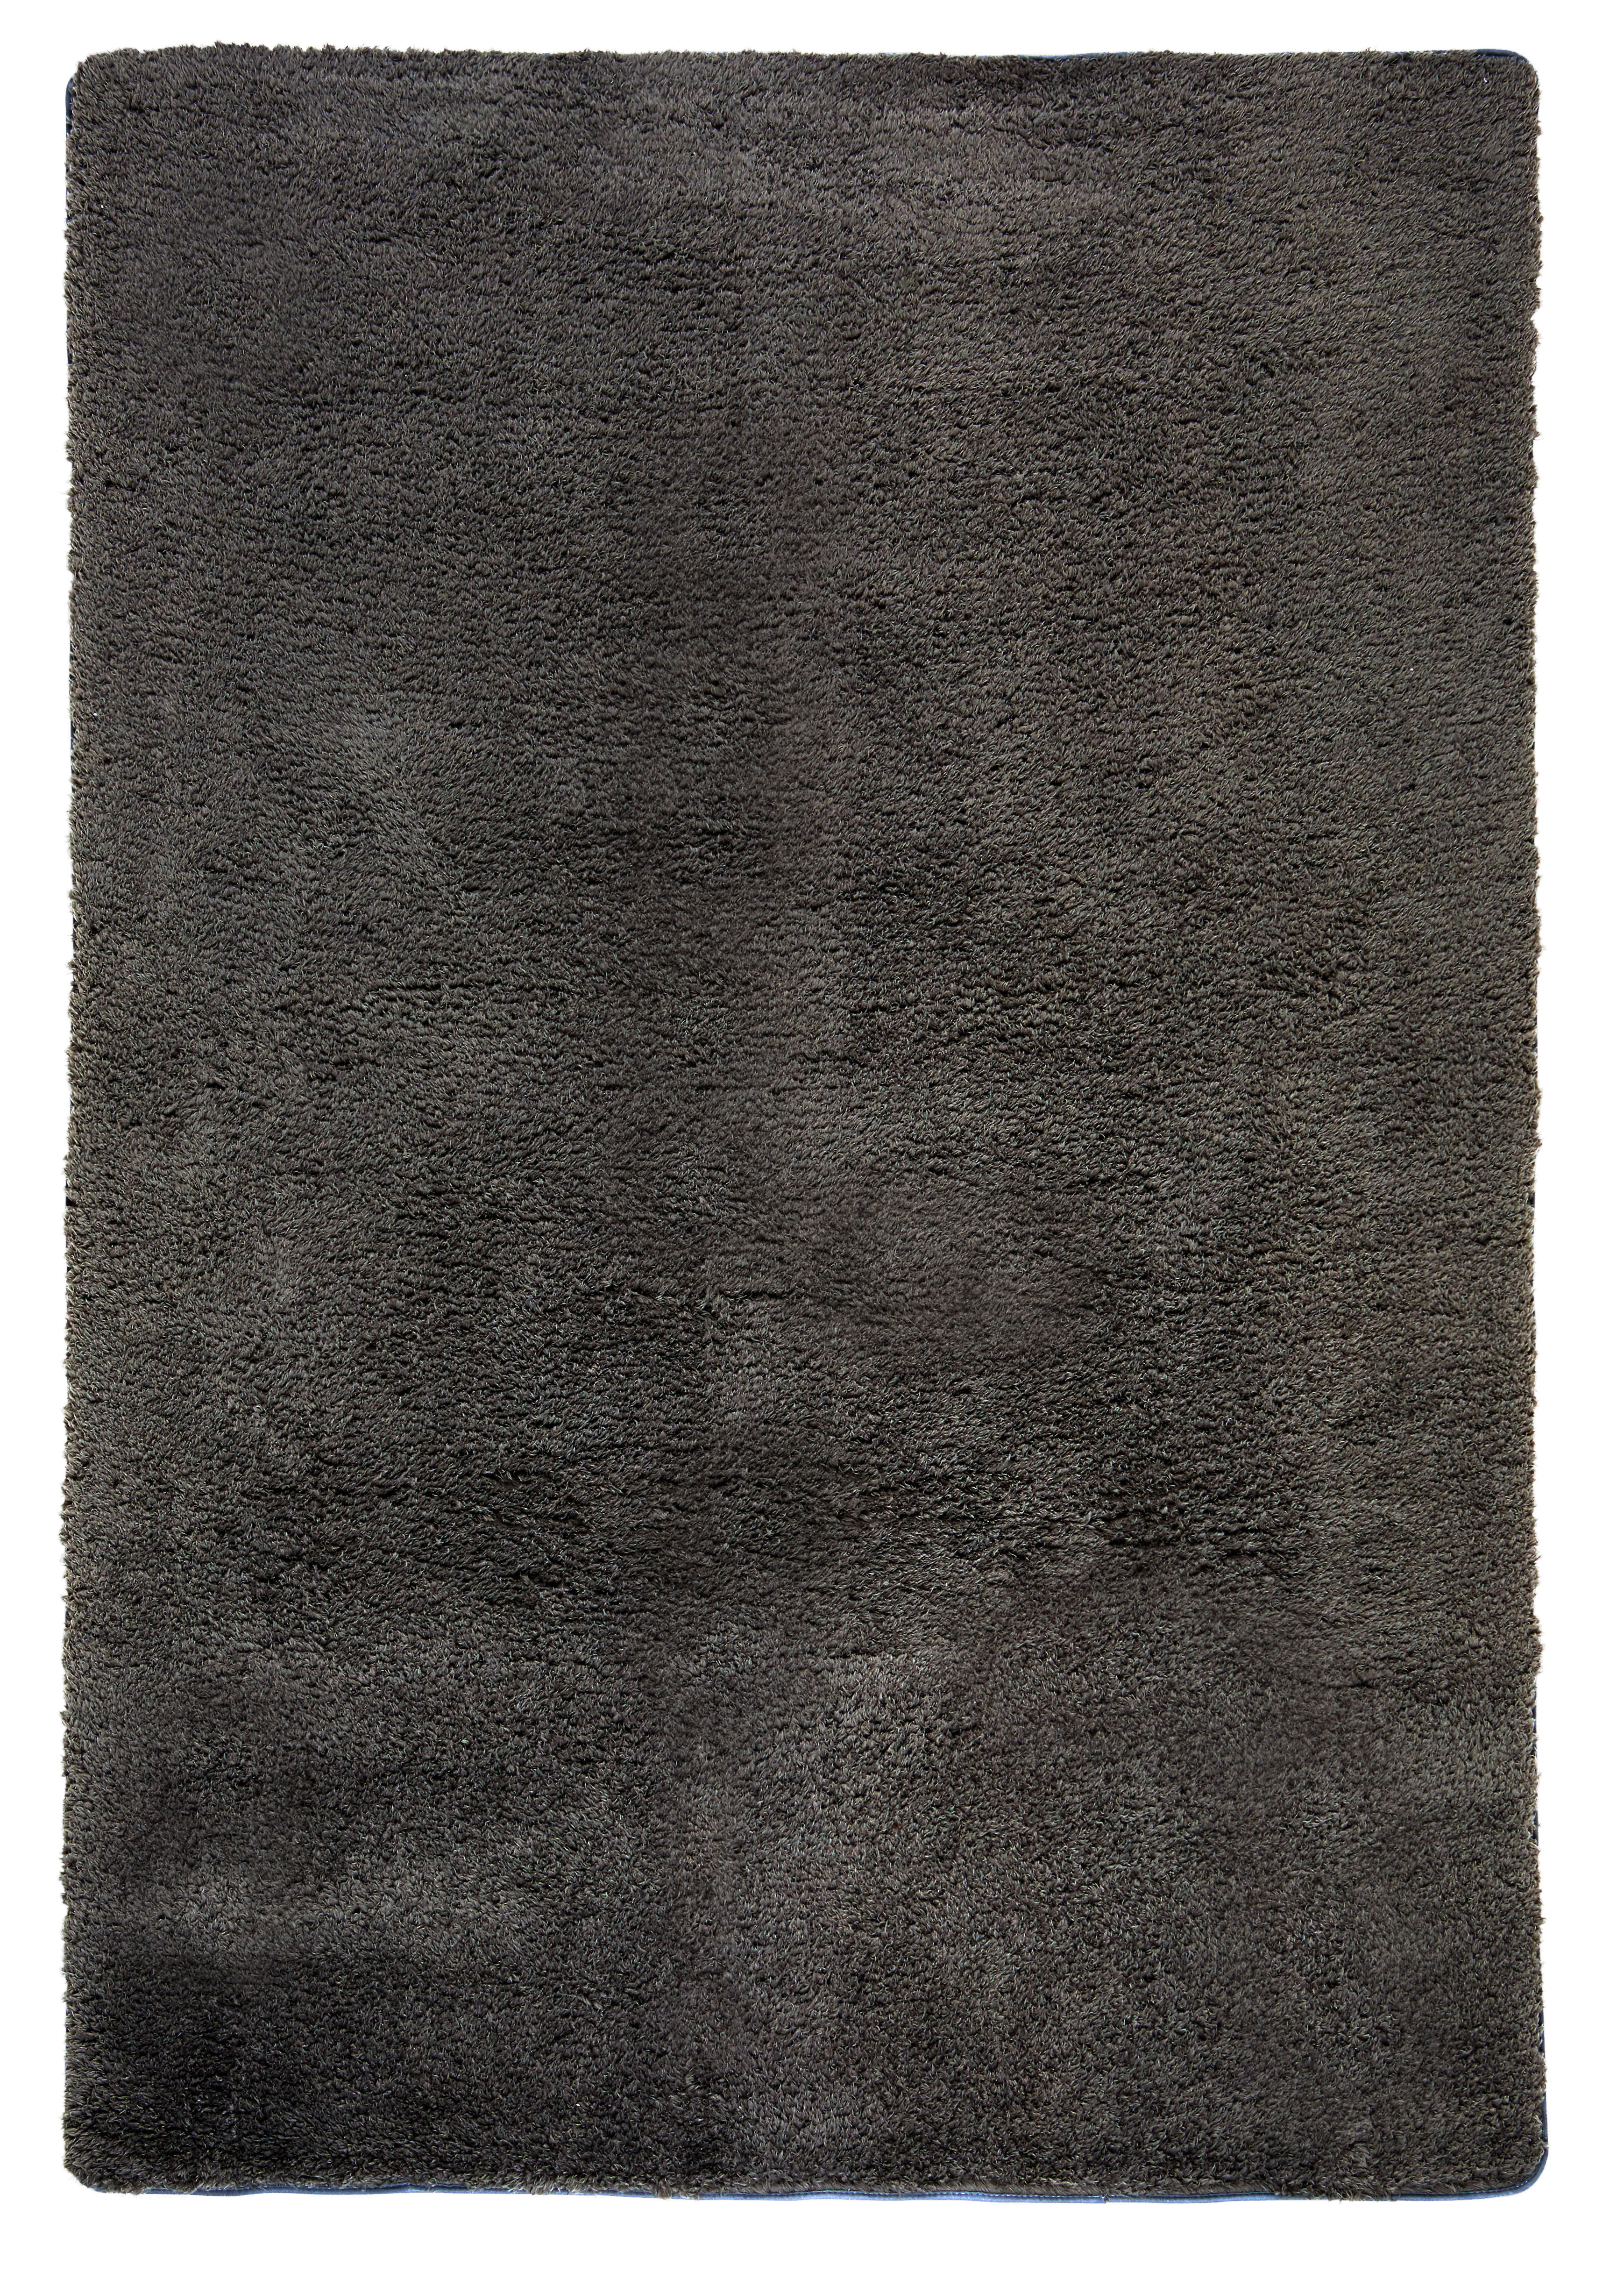 RYAMATTA  - antracit, Klassisk, textil (150/220cm) - Boxxx